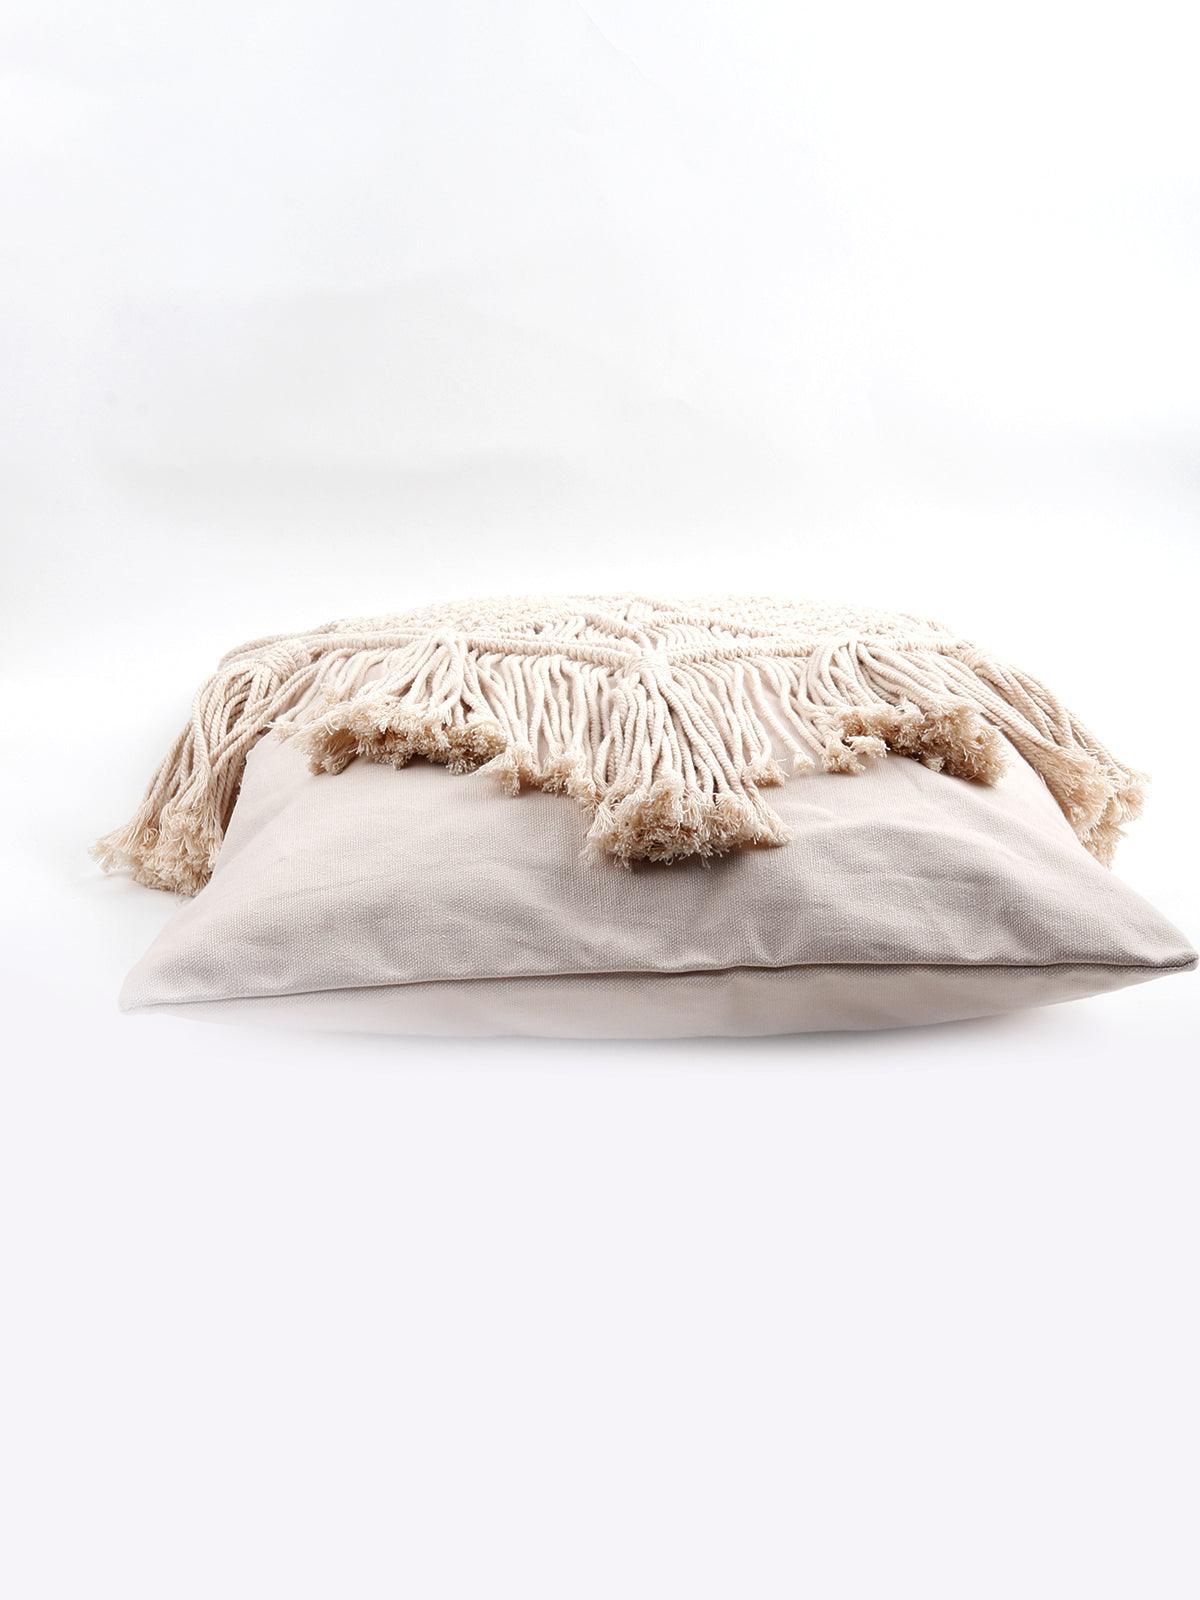 White Handmade Cushion Cover - Odette